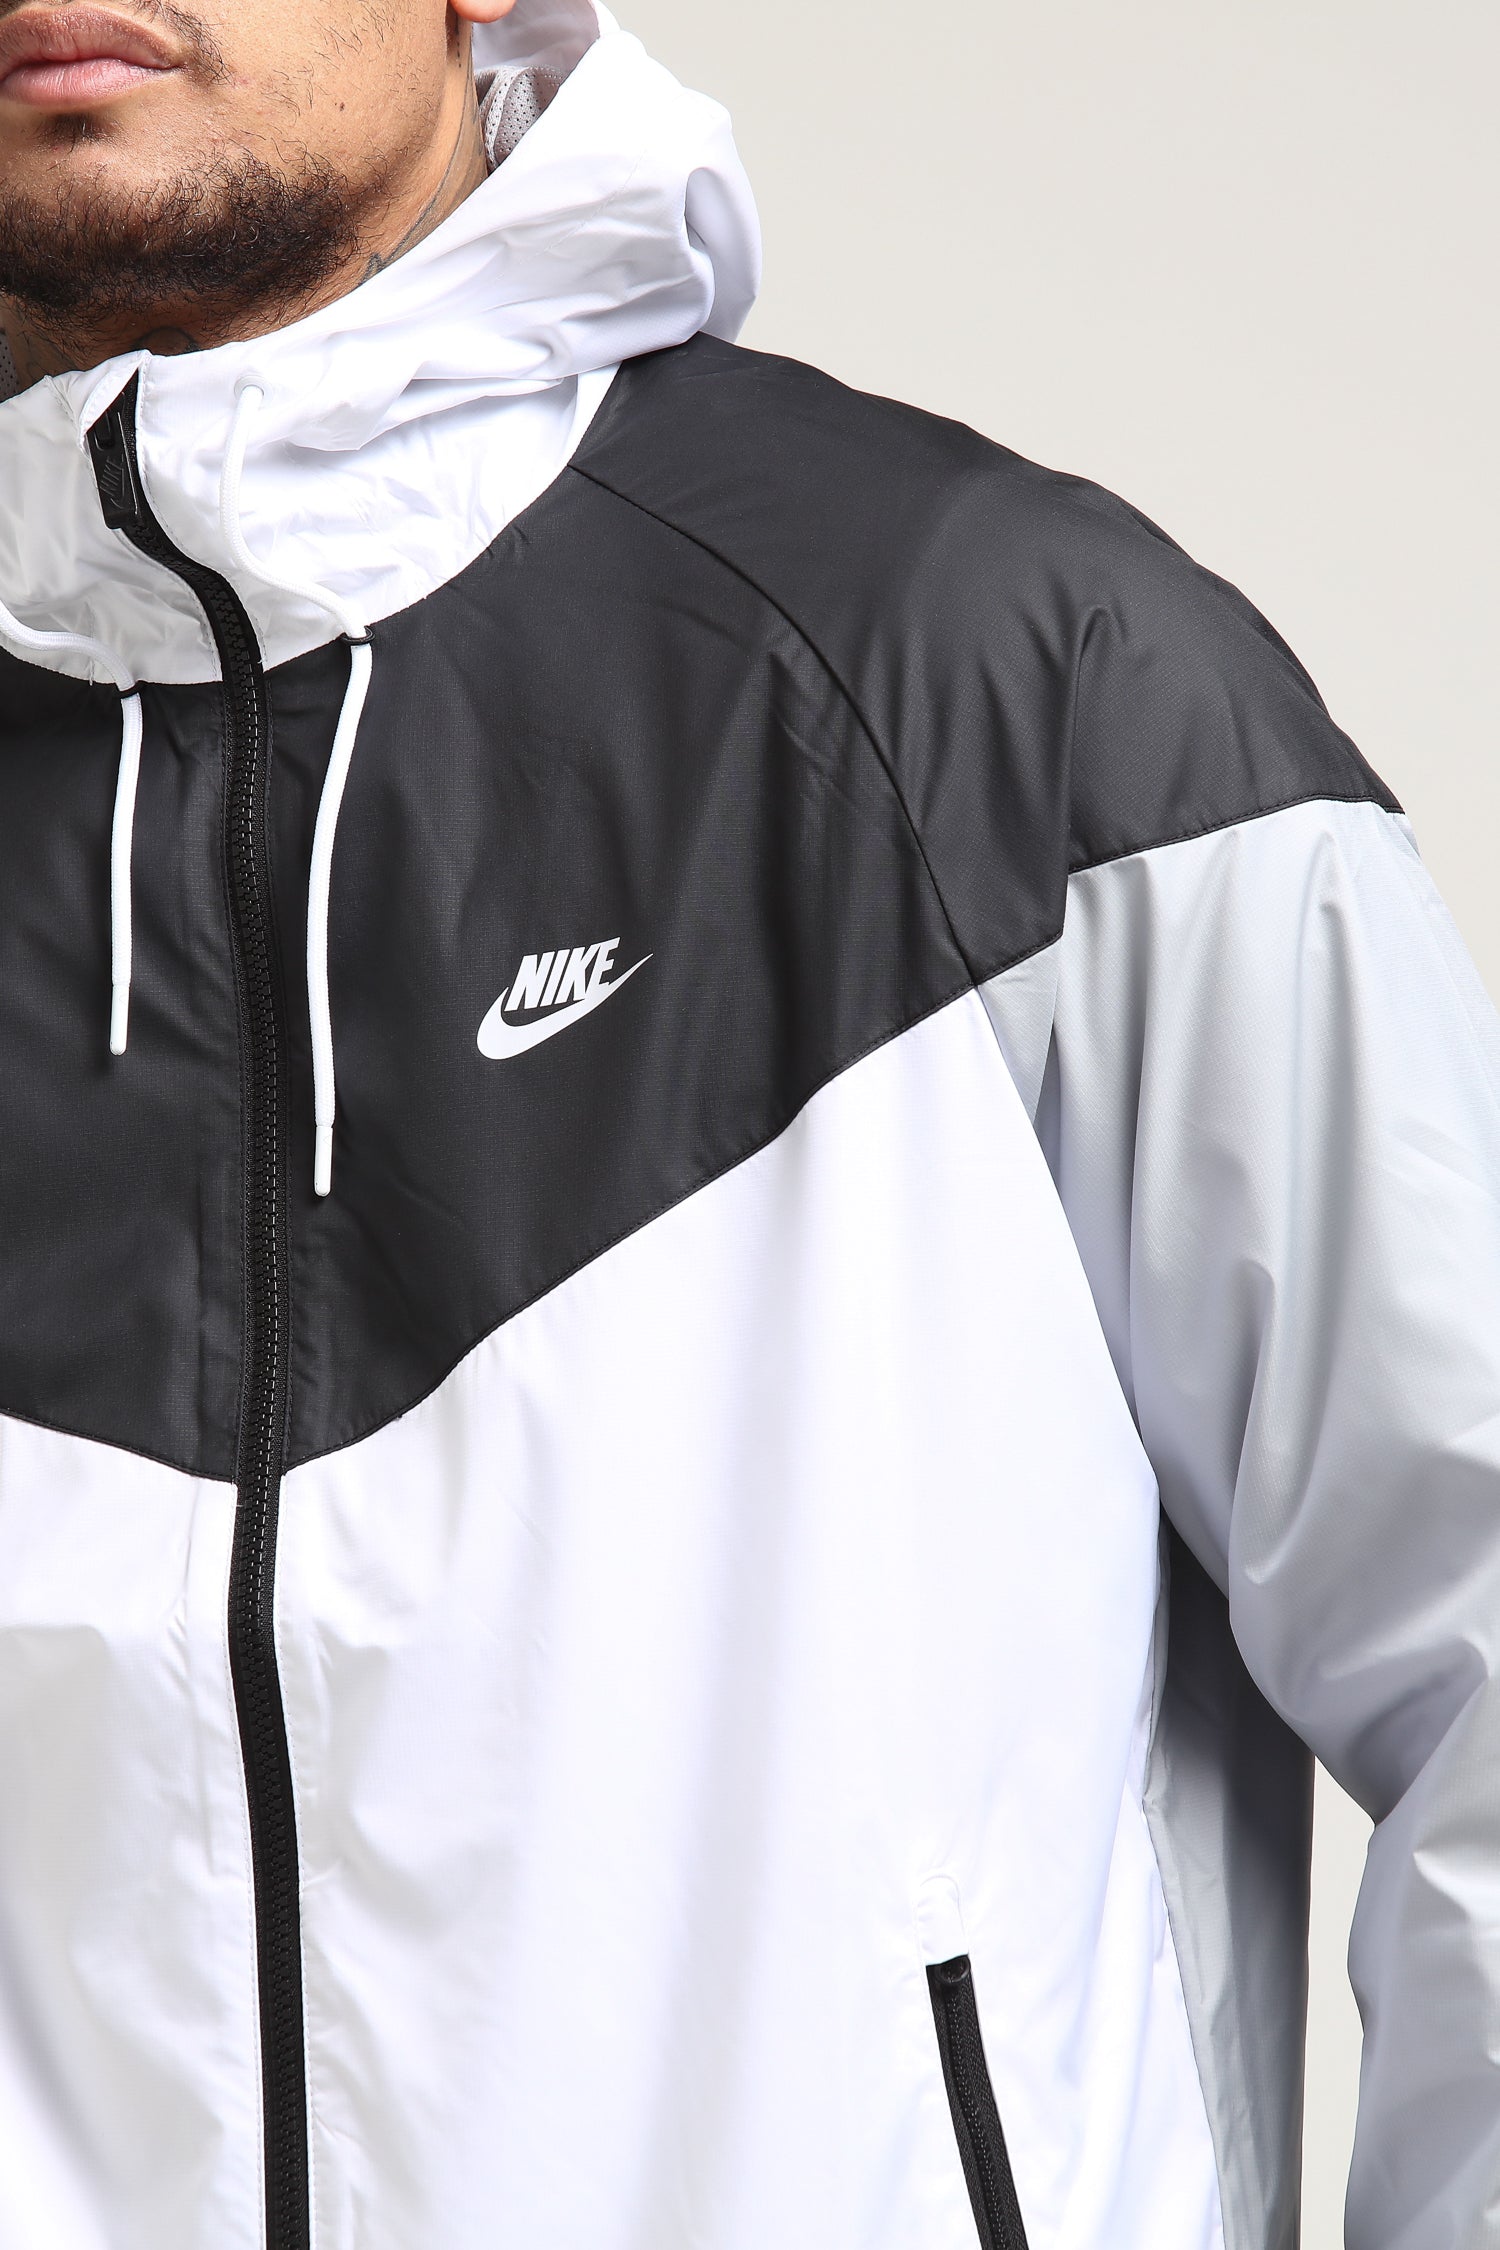 Nike Windrunner Jacket White/Black/Grey 